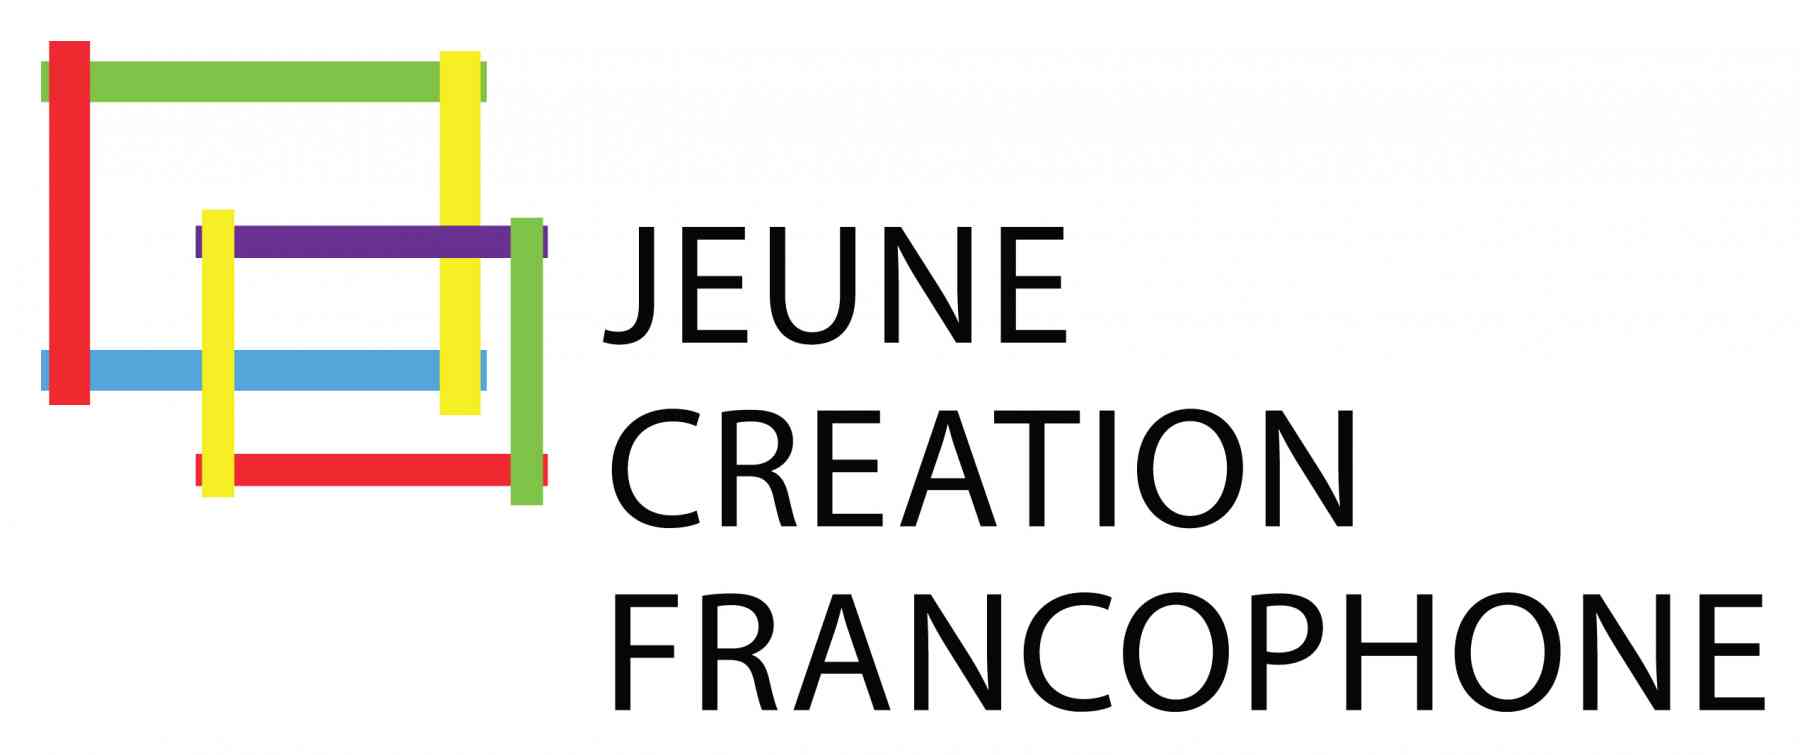 Fond Jeune Création Francophone